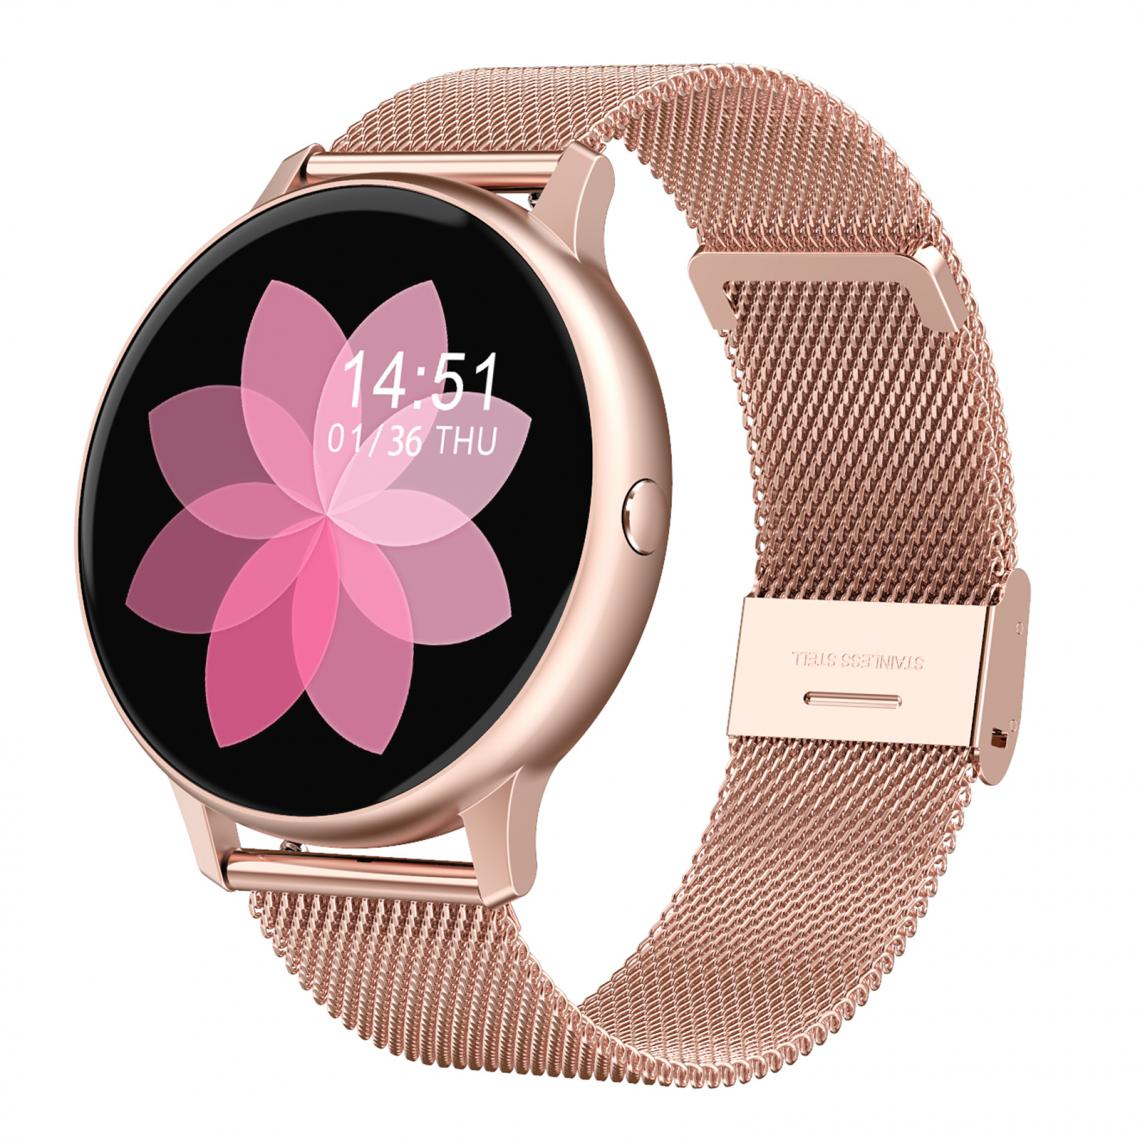 marque generique - DT88 PRO Smart Watch ECG Cardiofréquencemètre Pour IOS Android Rose Silicone - Montre connectée